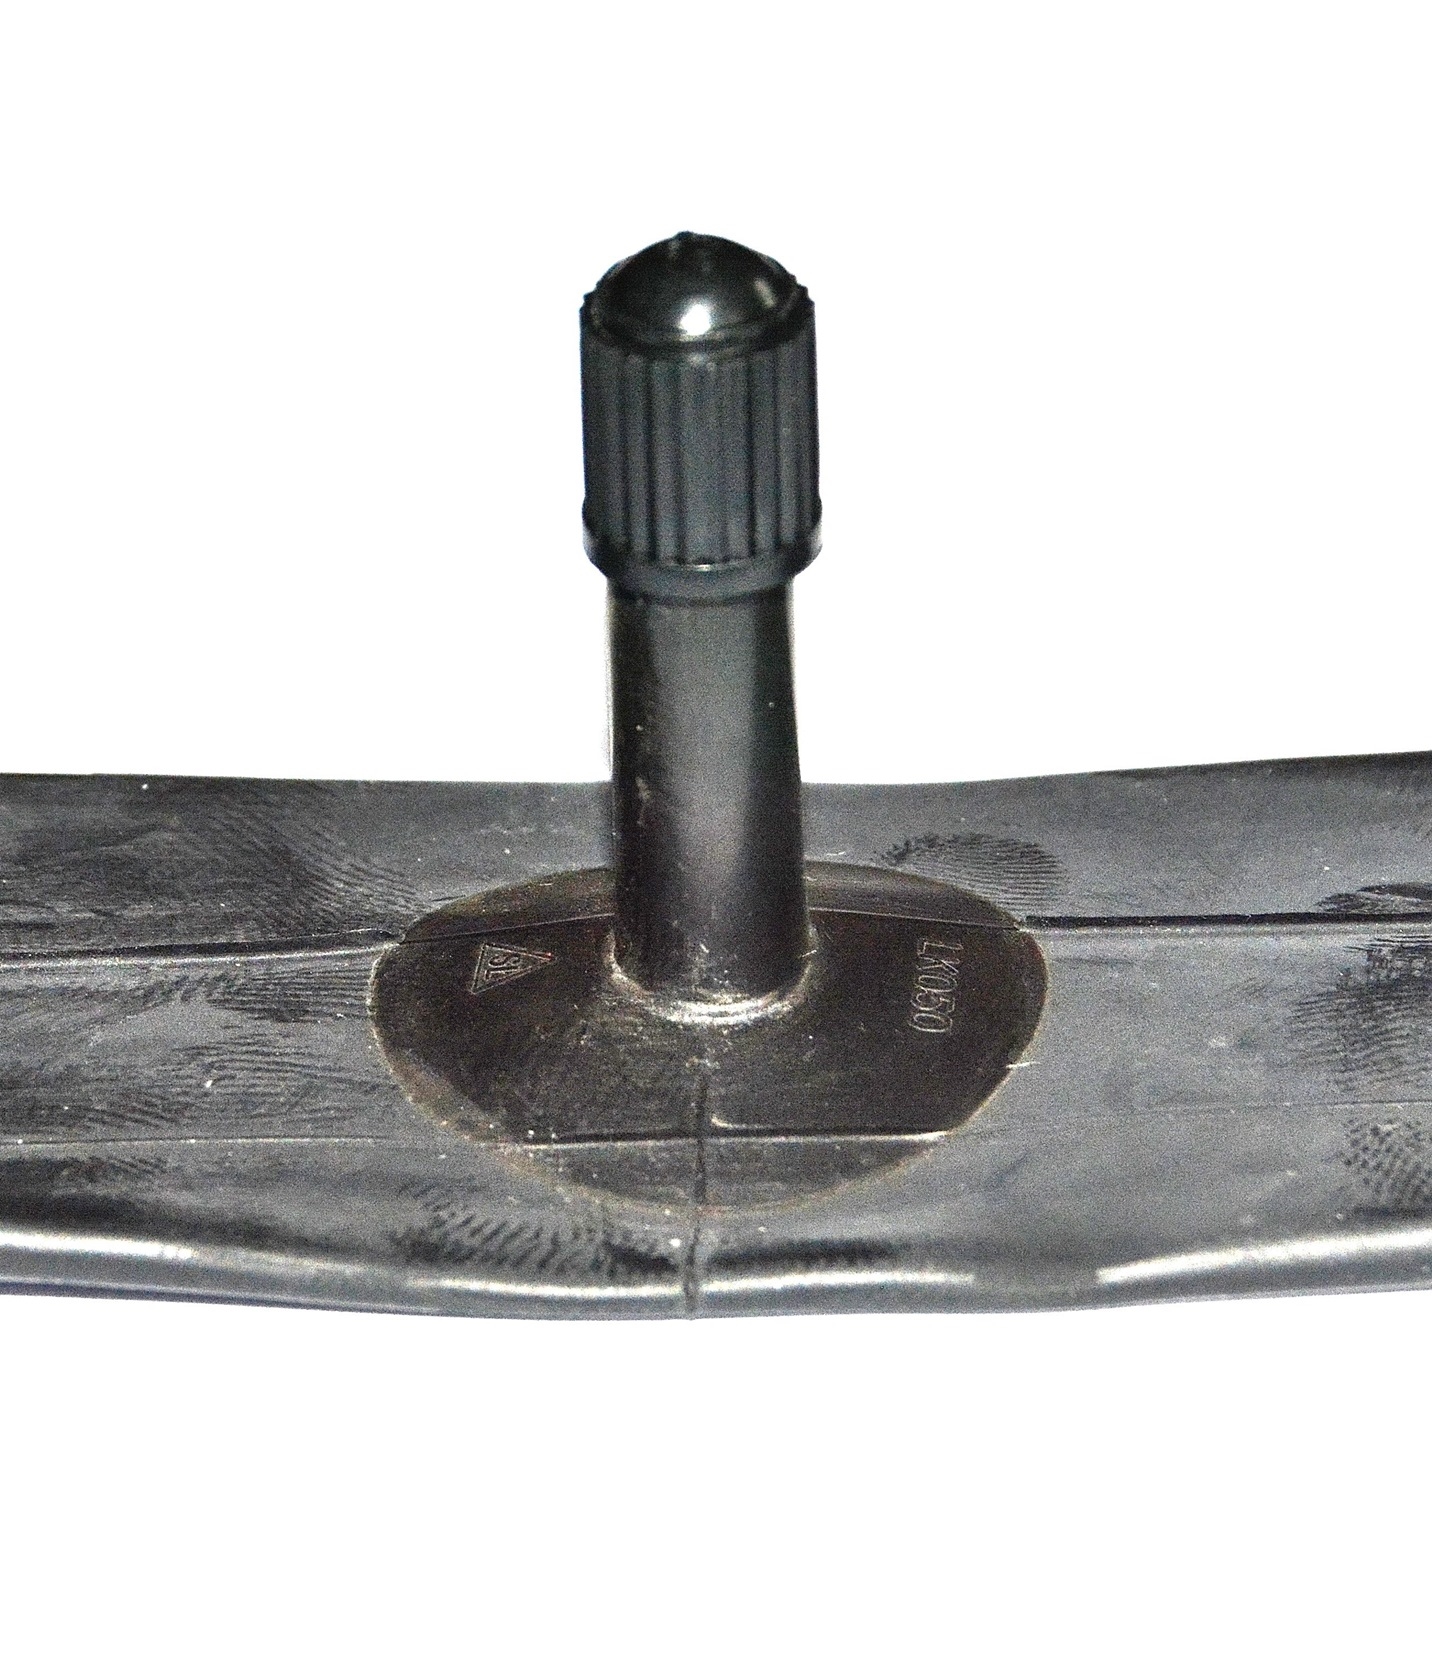 schrader-valve.JPG  by karmark